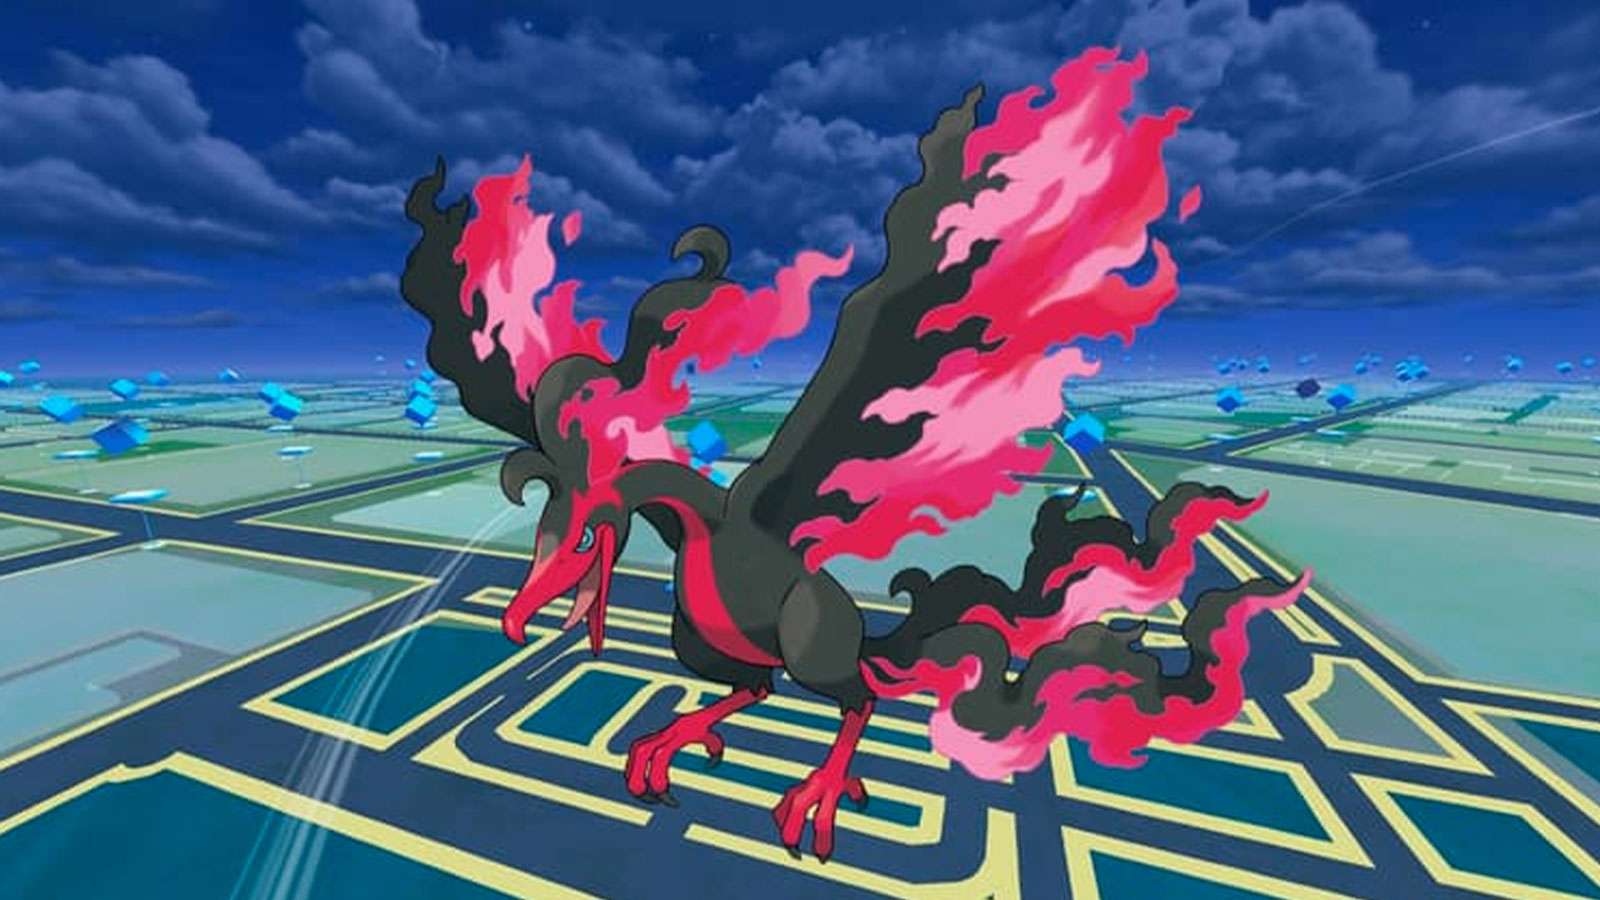 Sulfura de Galar dans Pokémon Go